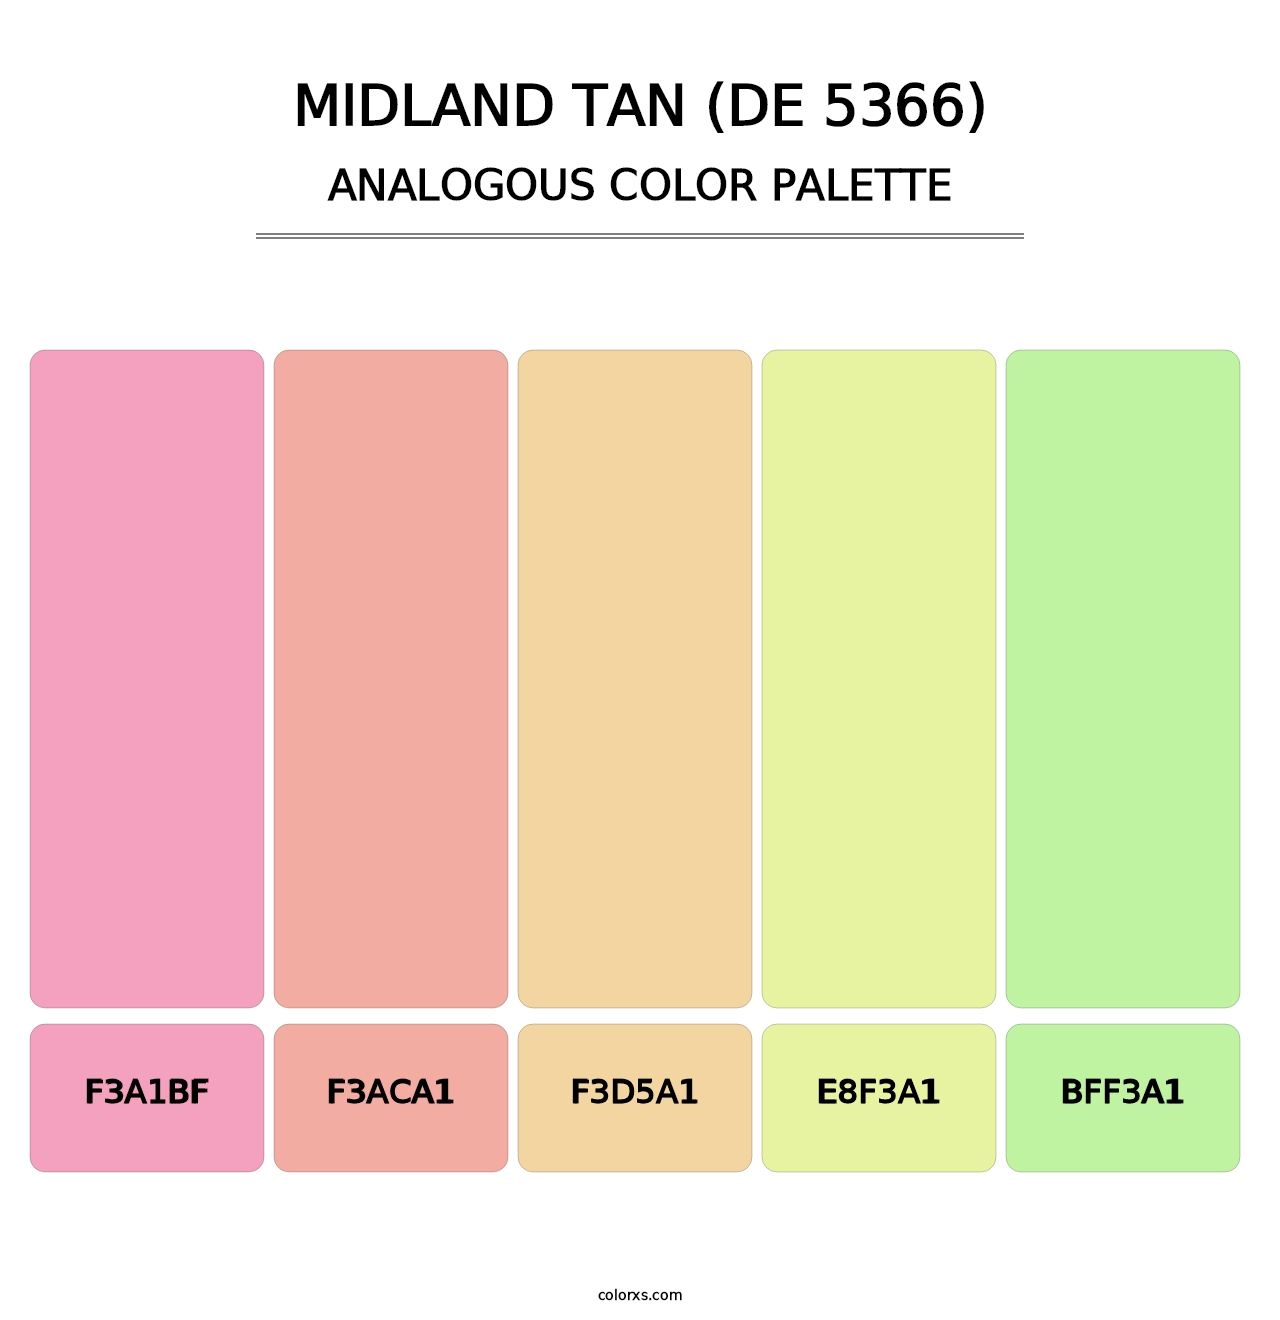 Midland Tan (DE 5366) - Analogous Color Palette